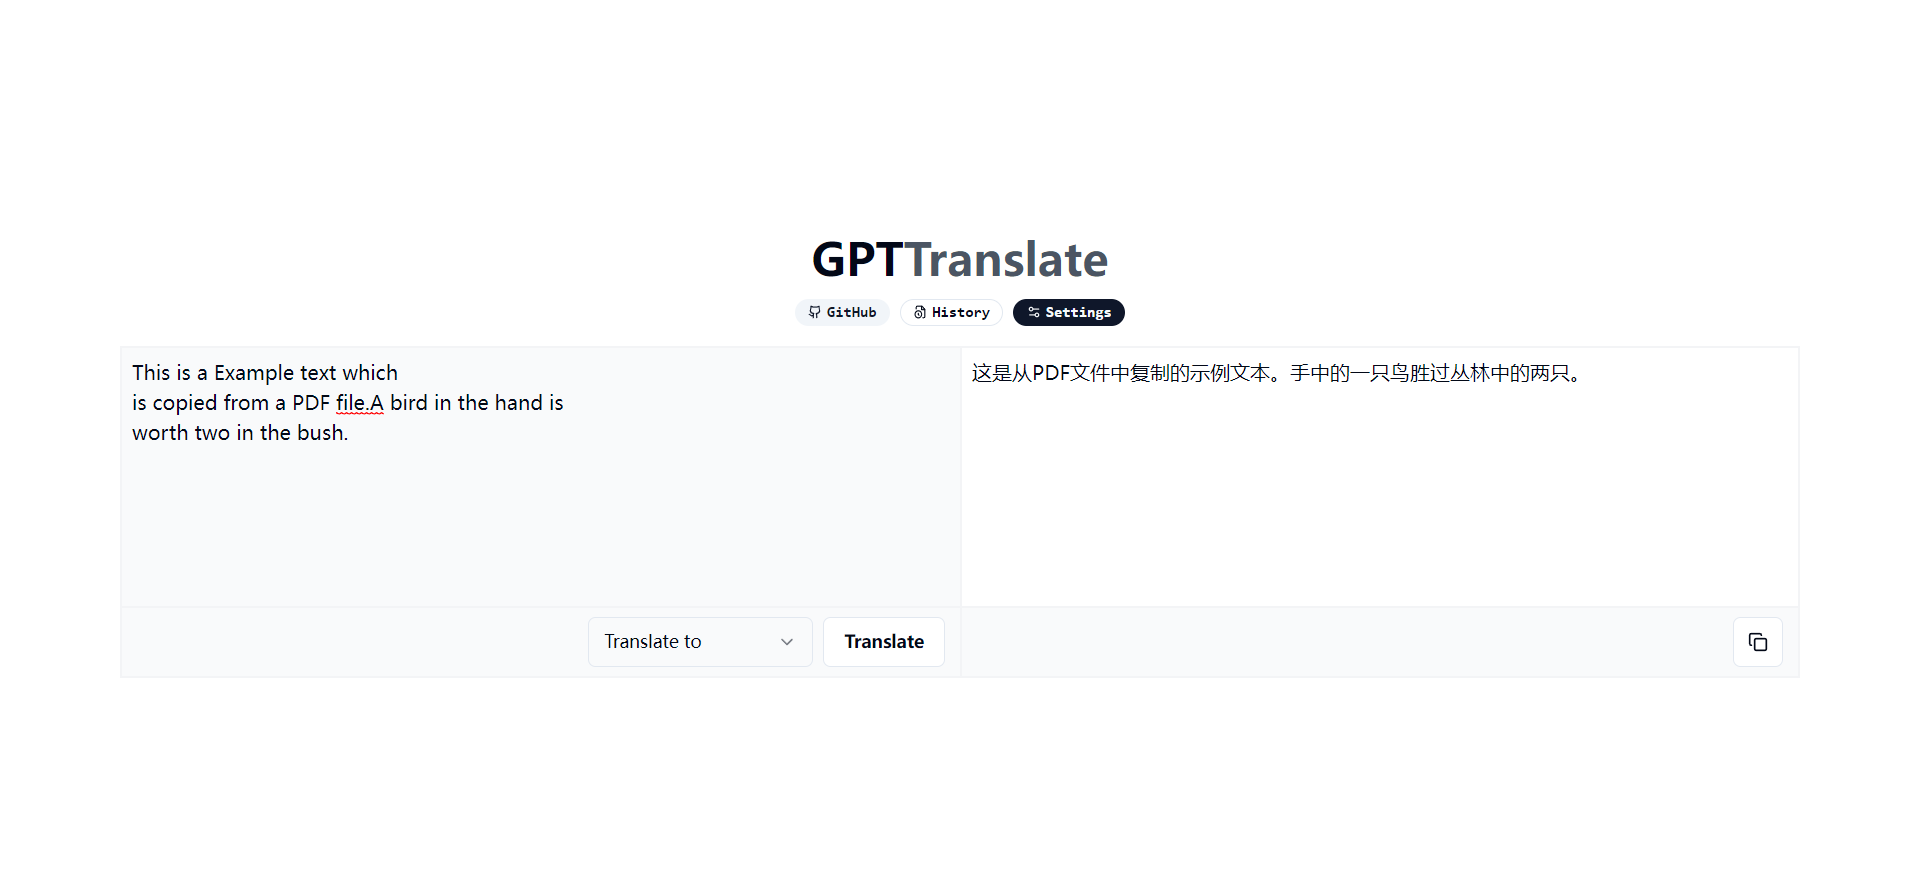 GPT-Translate